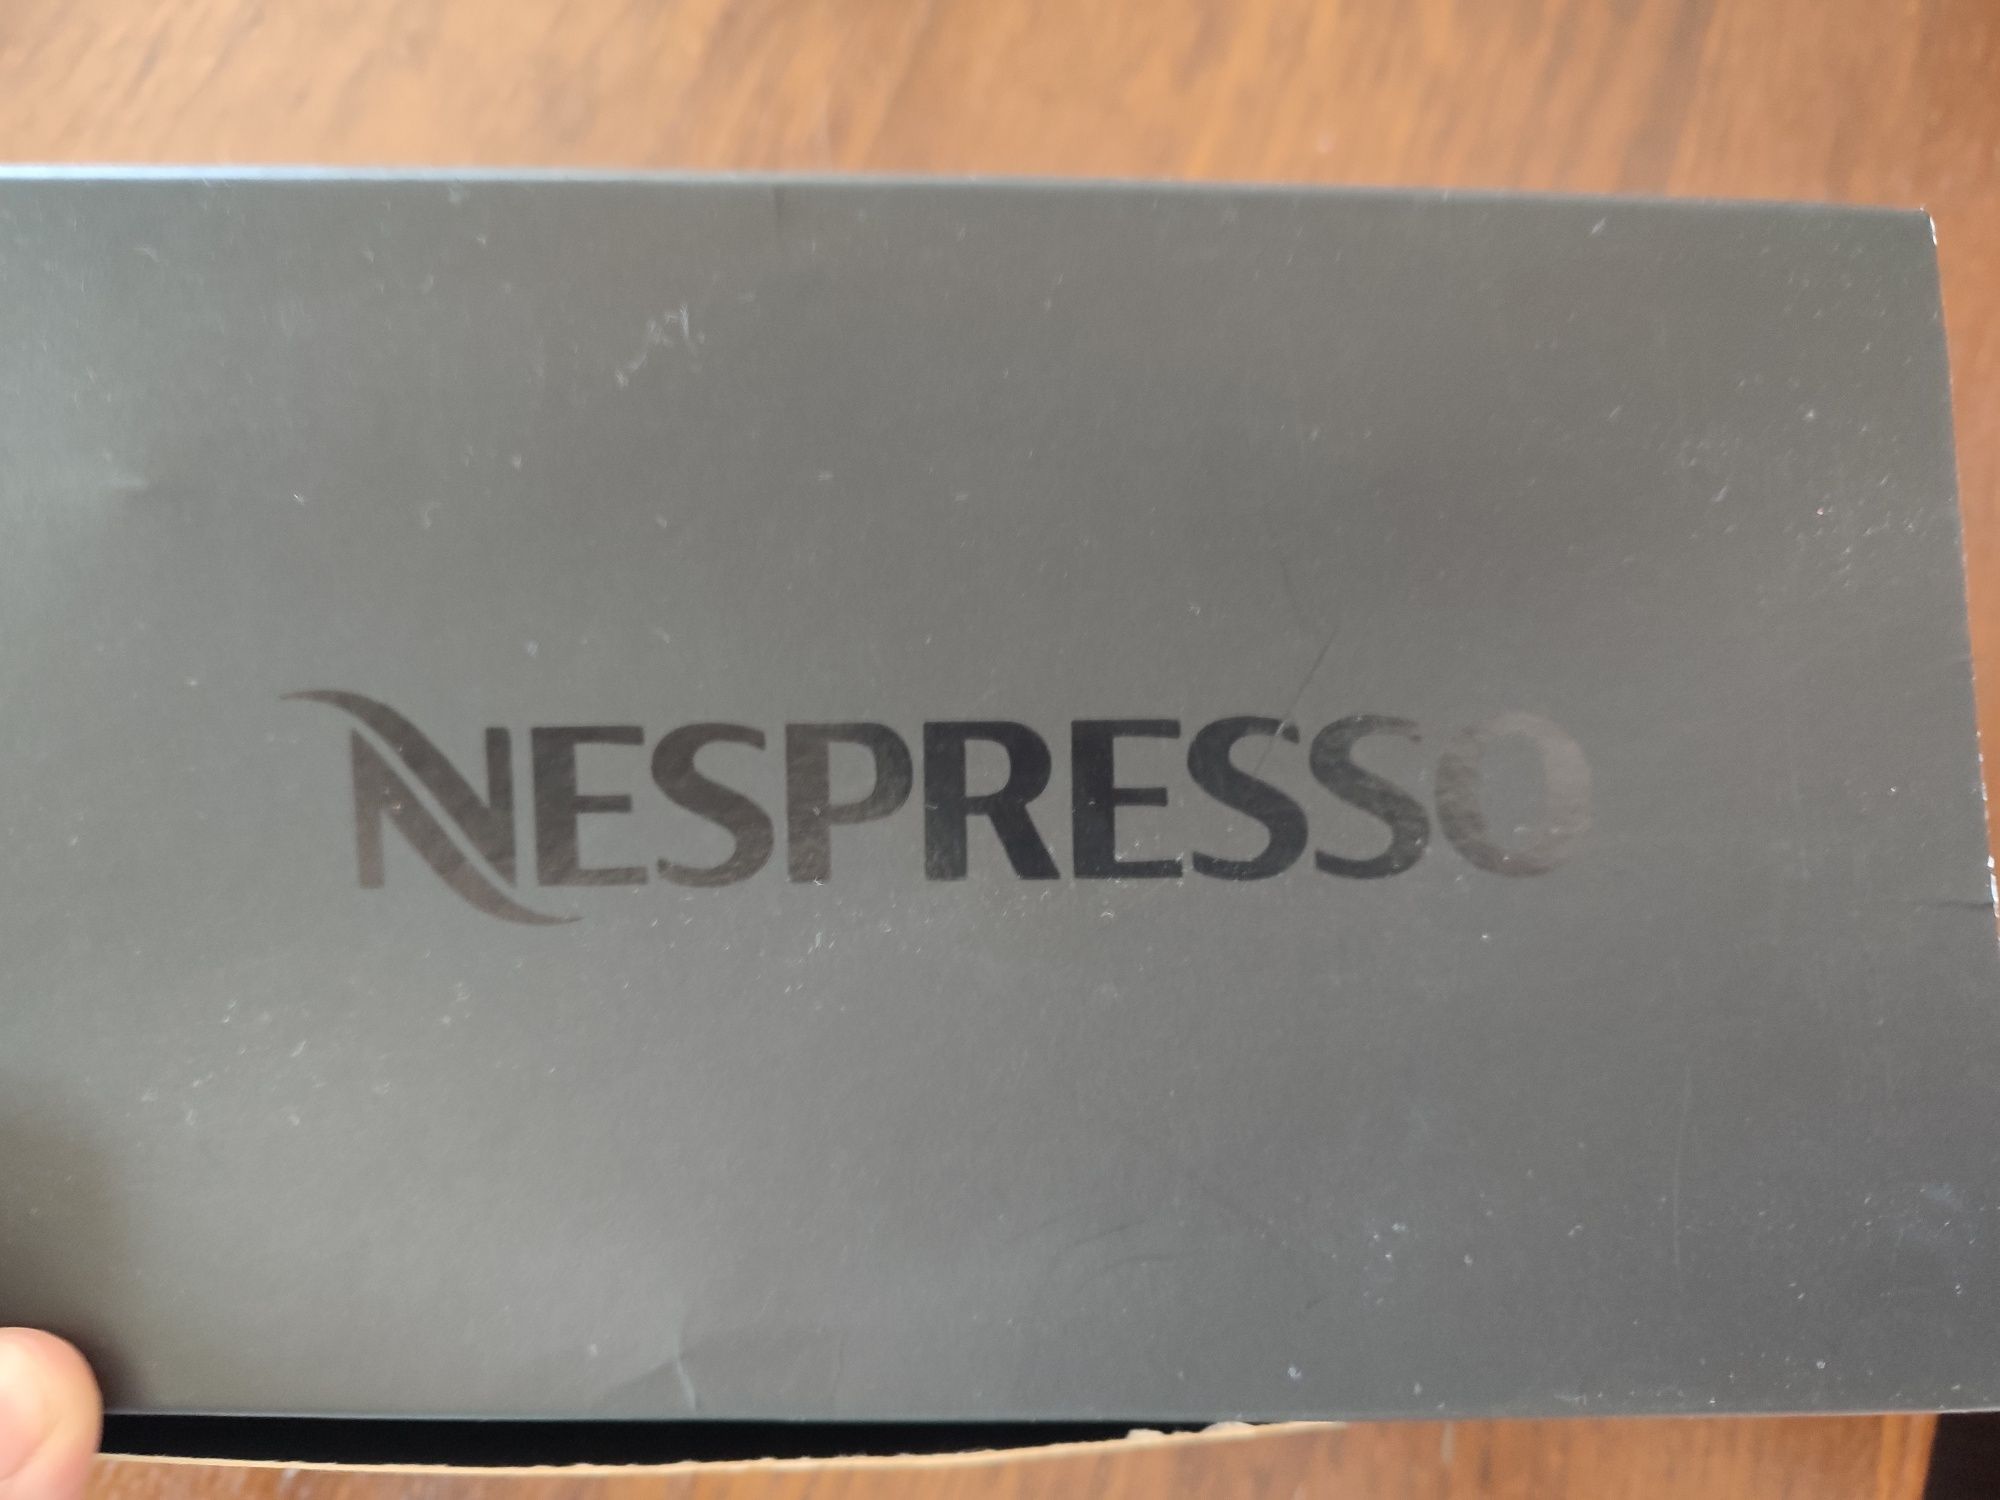 Chávenas de café Nespresso novas